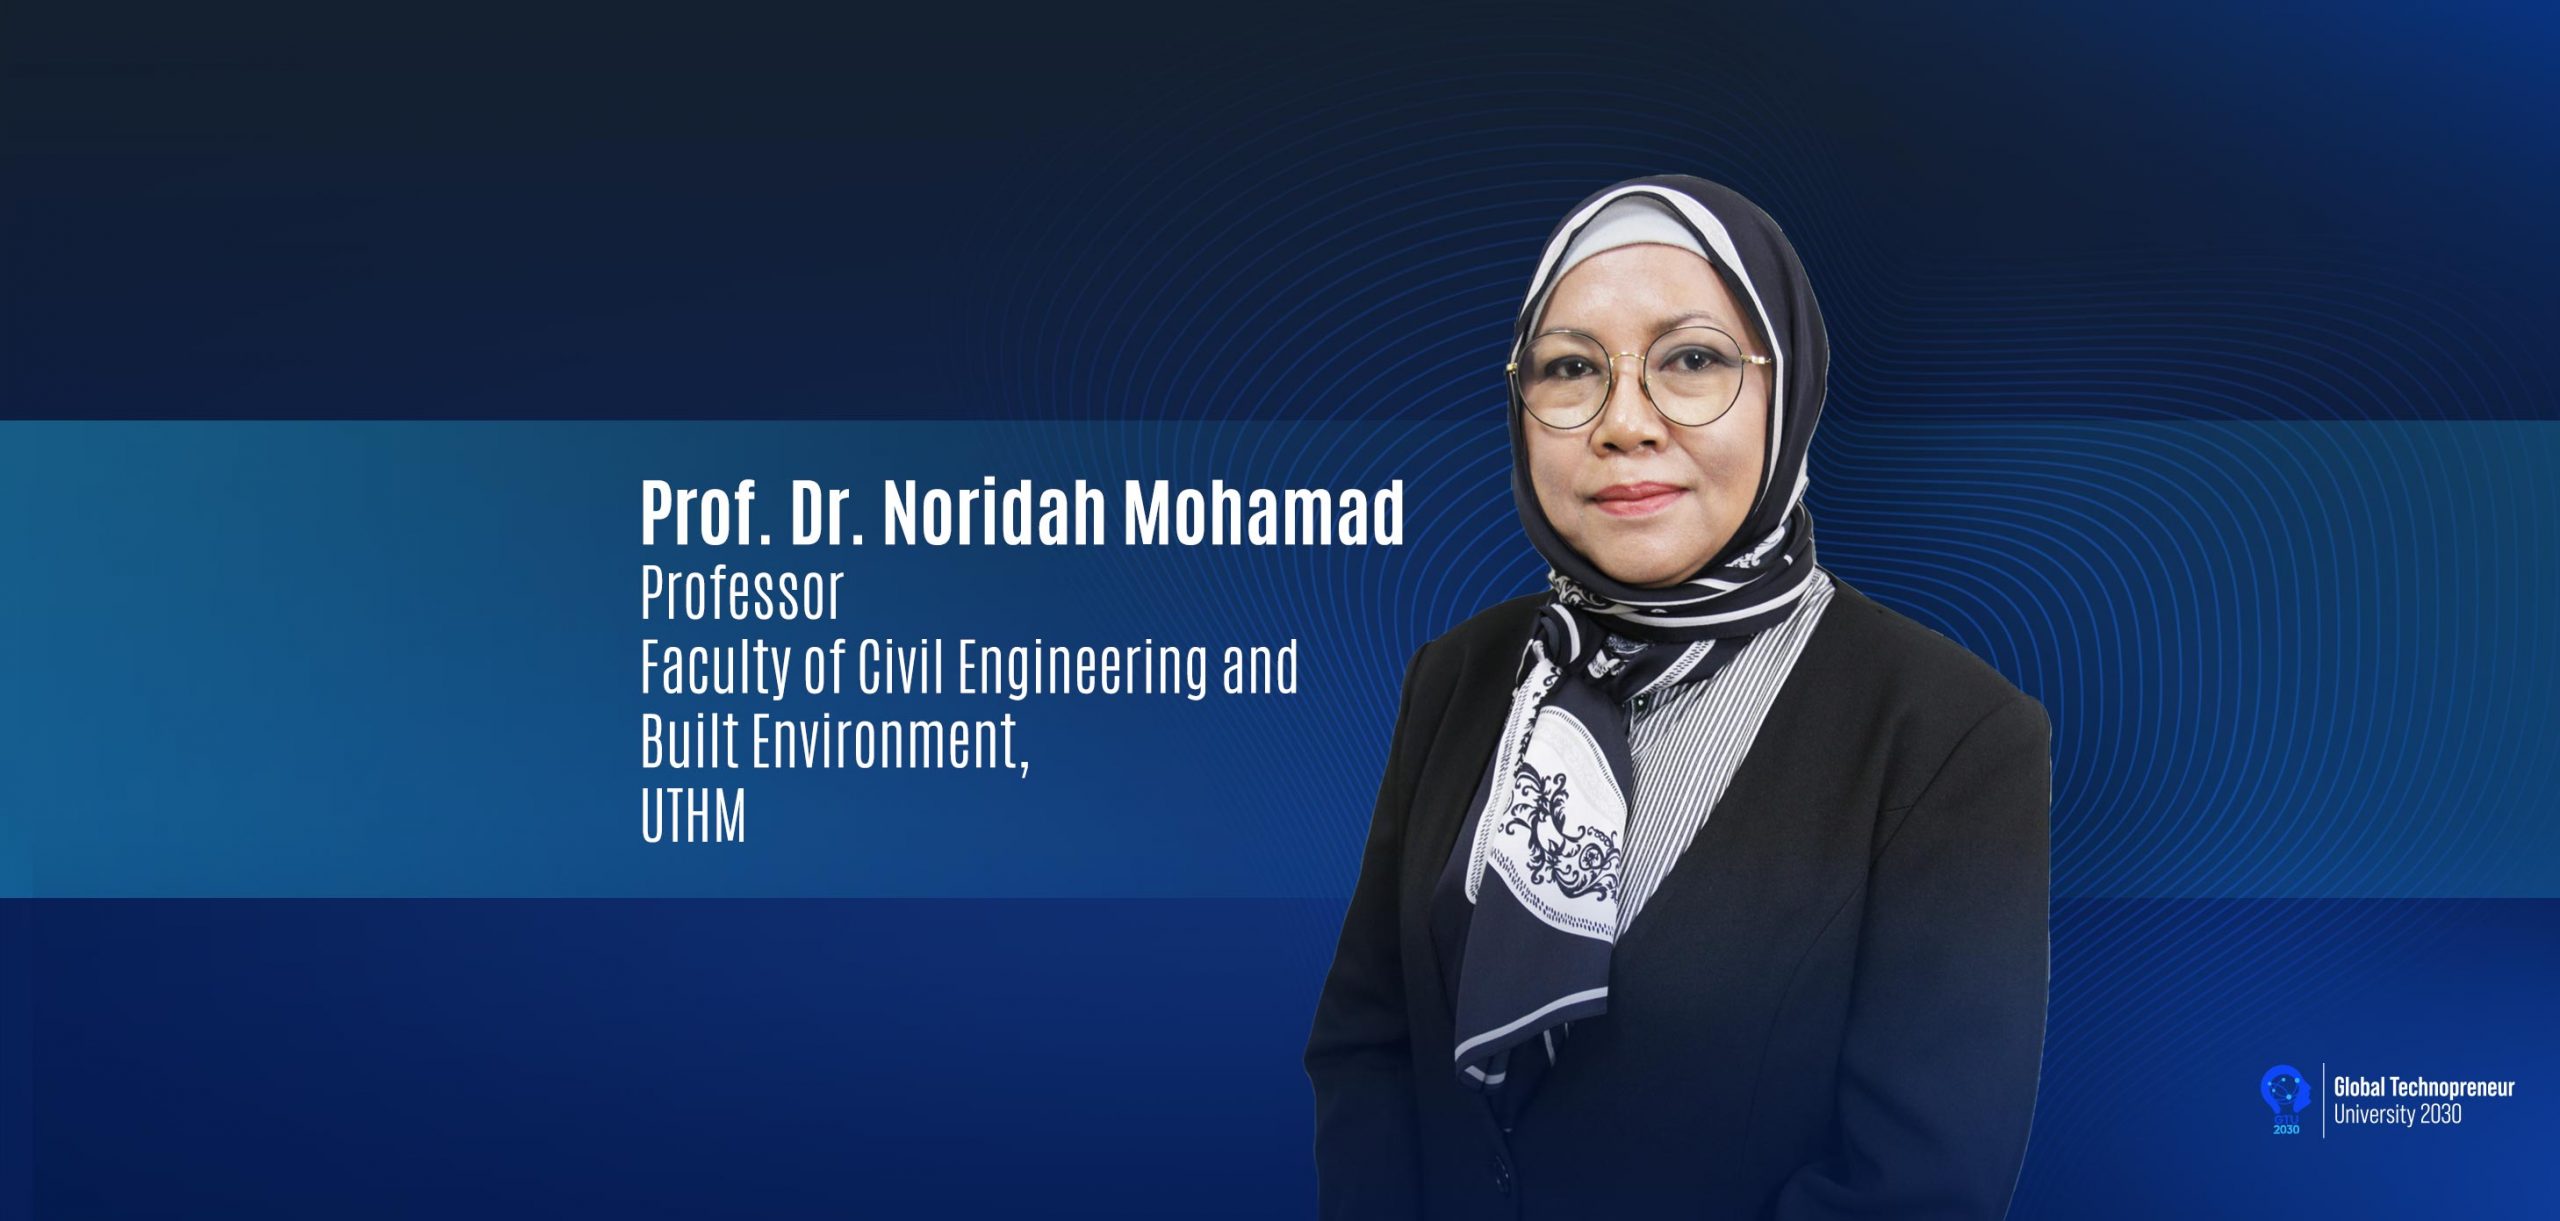 UTHM Expert: Professor Dr. Noridah Mohamad